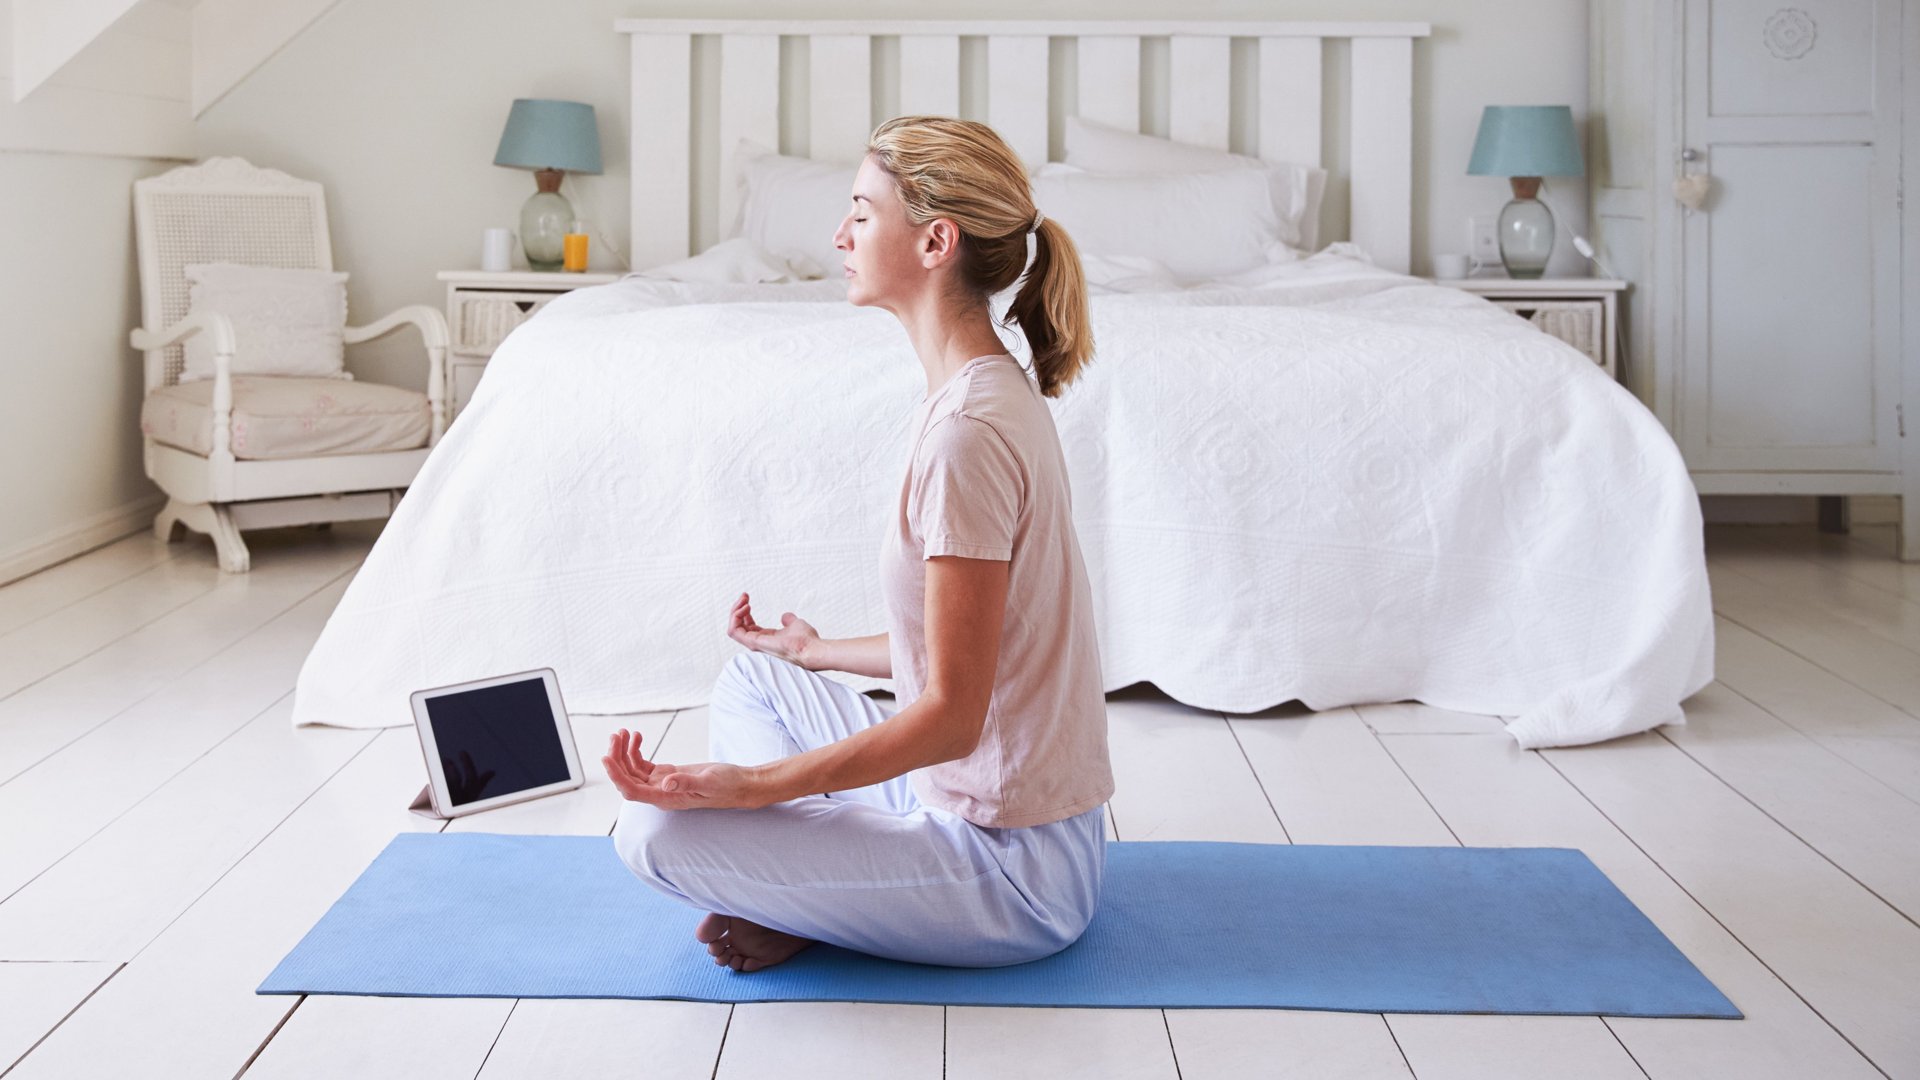 Une femme utilise une application de méditation assise sur un tapis de yoga bleu devant son lit blanc